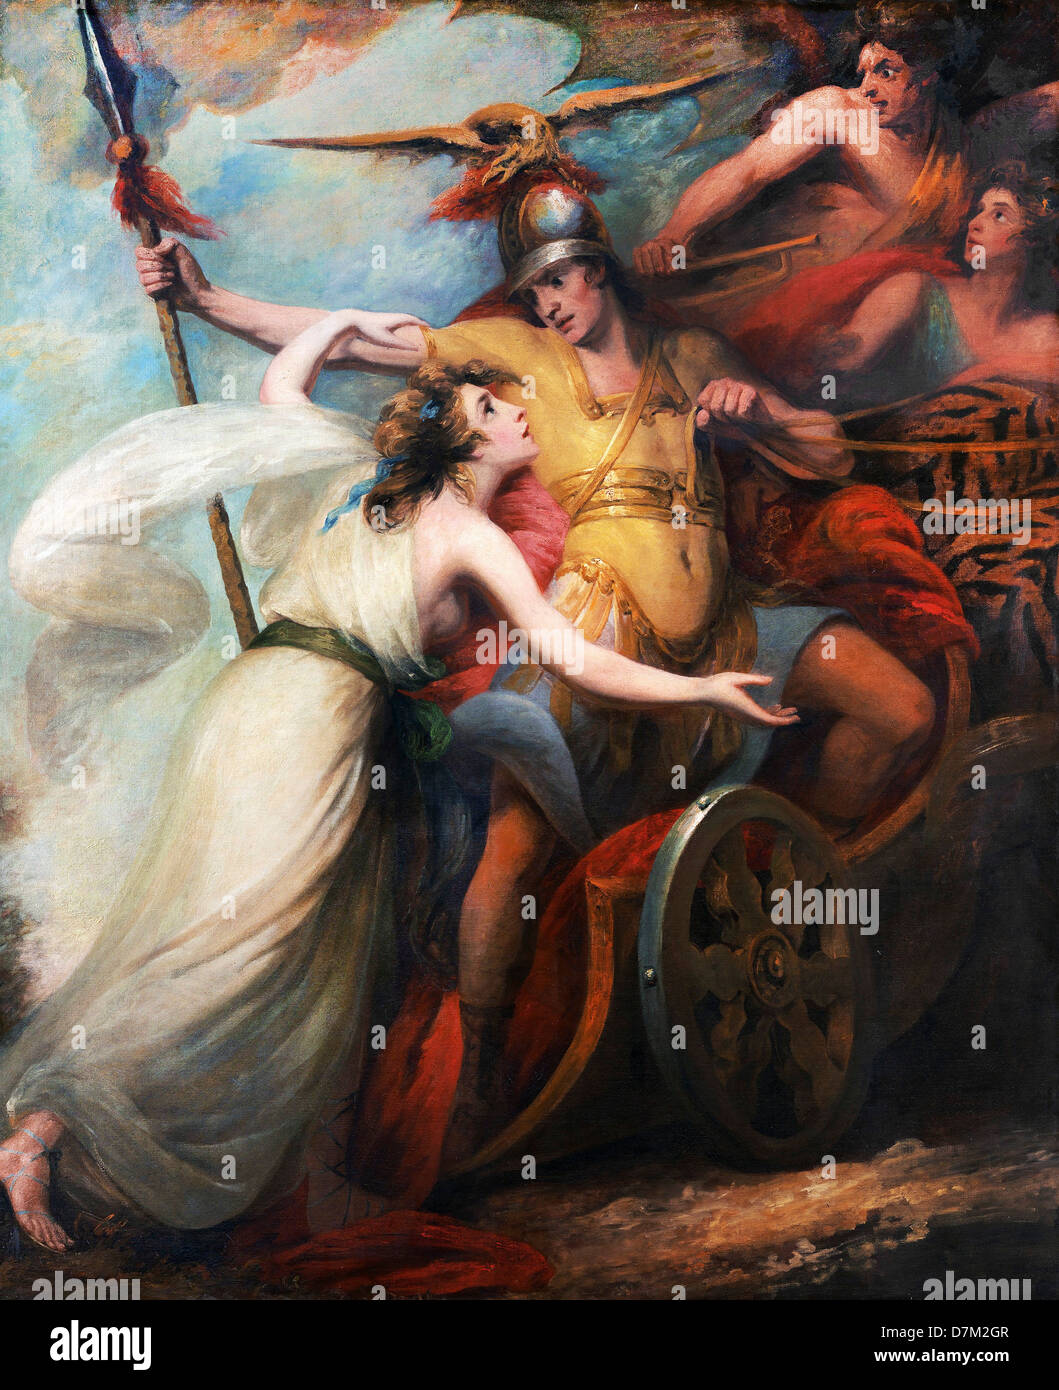 William Artaud, "il trionfo della Misericordia", da Collins" "Ode alla misericordia" 1788-1790 Olio su tela. Foto Stock